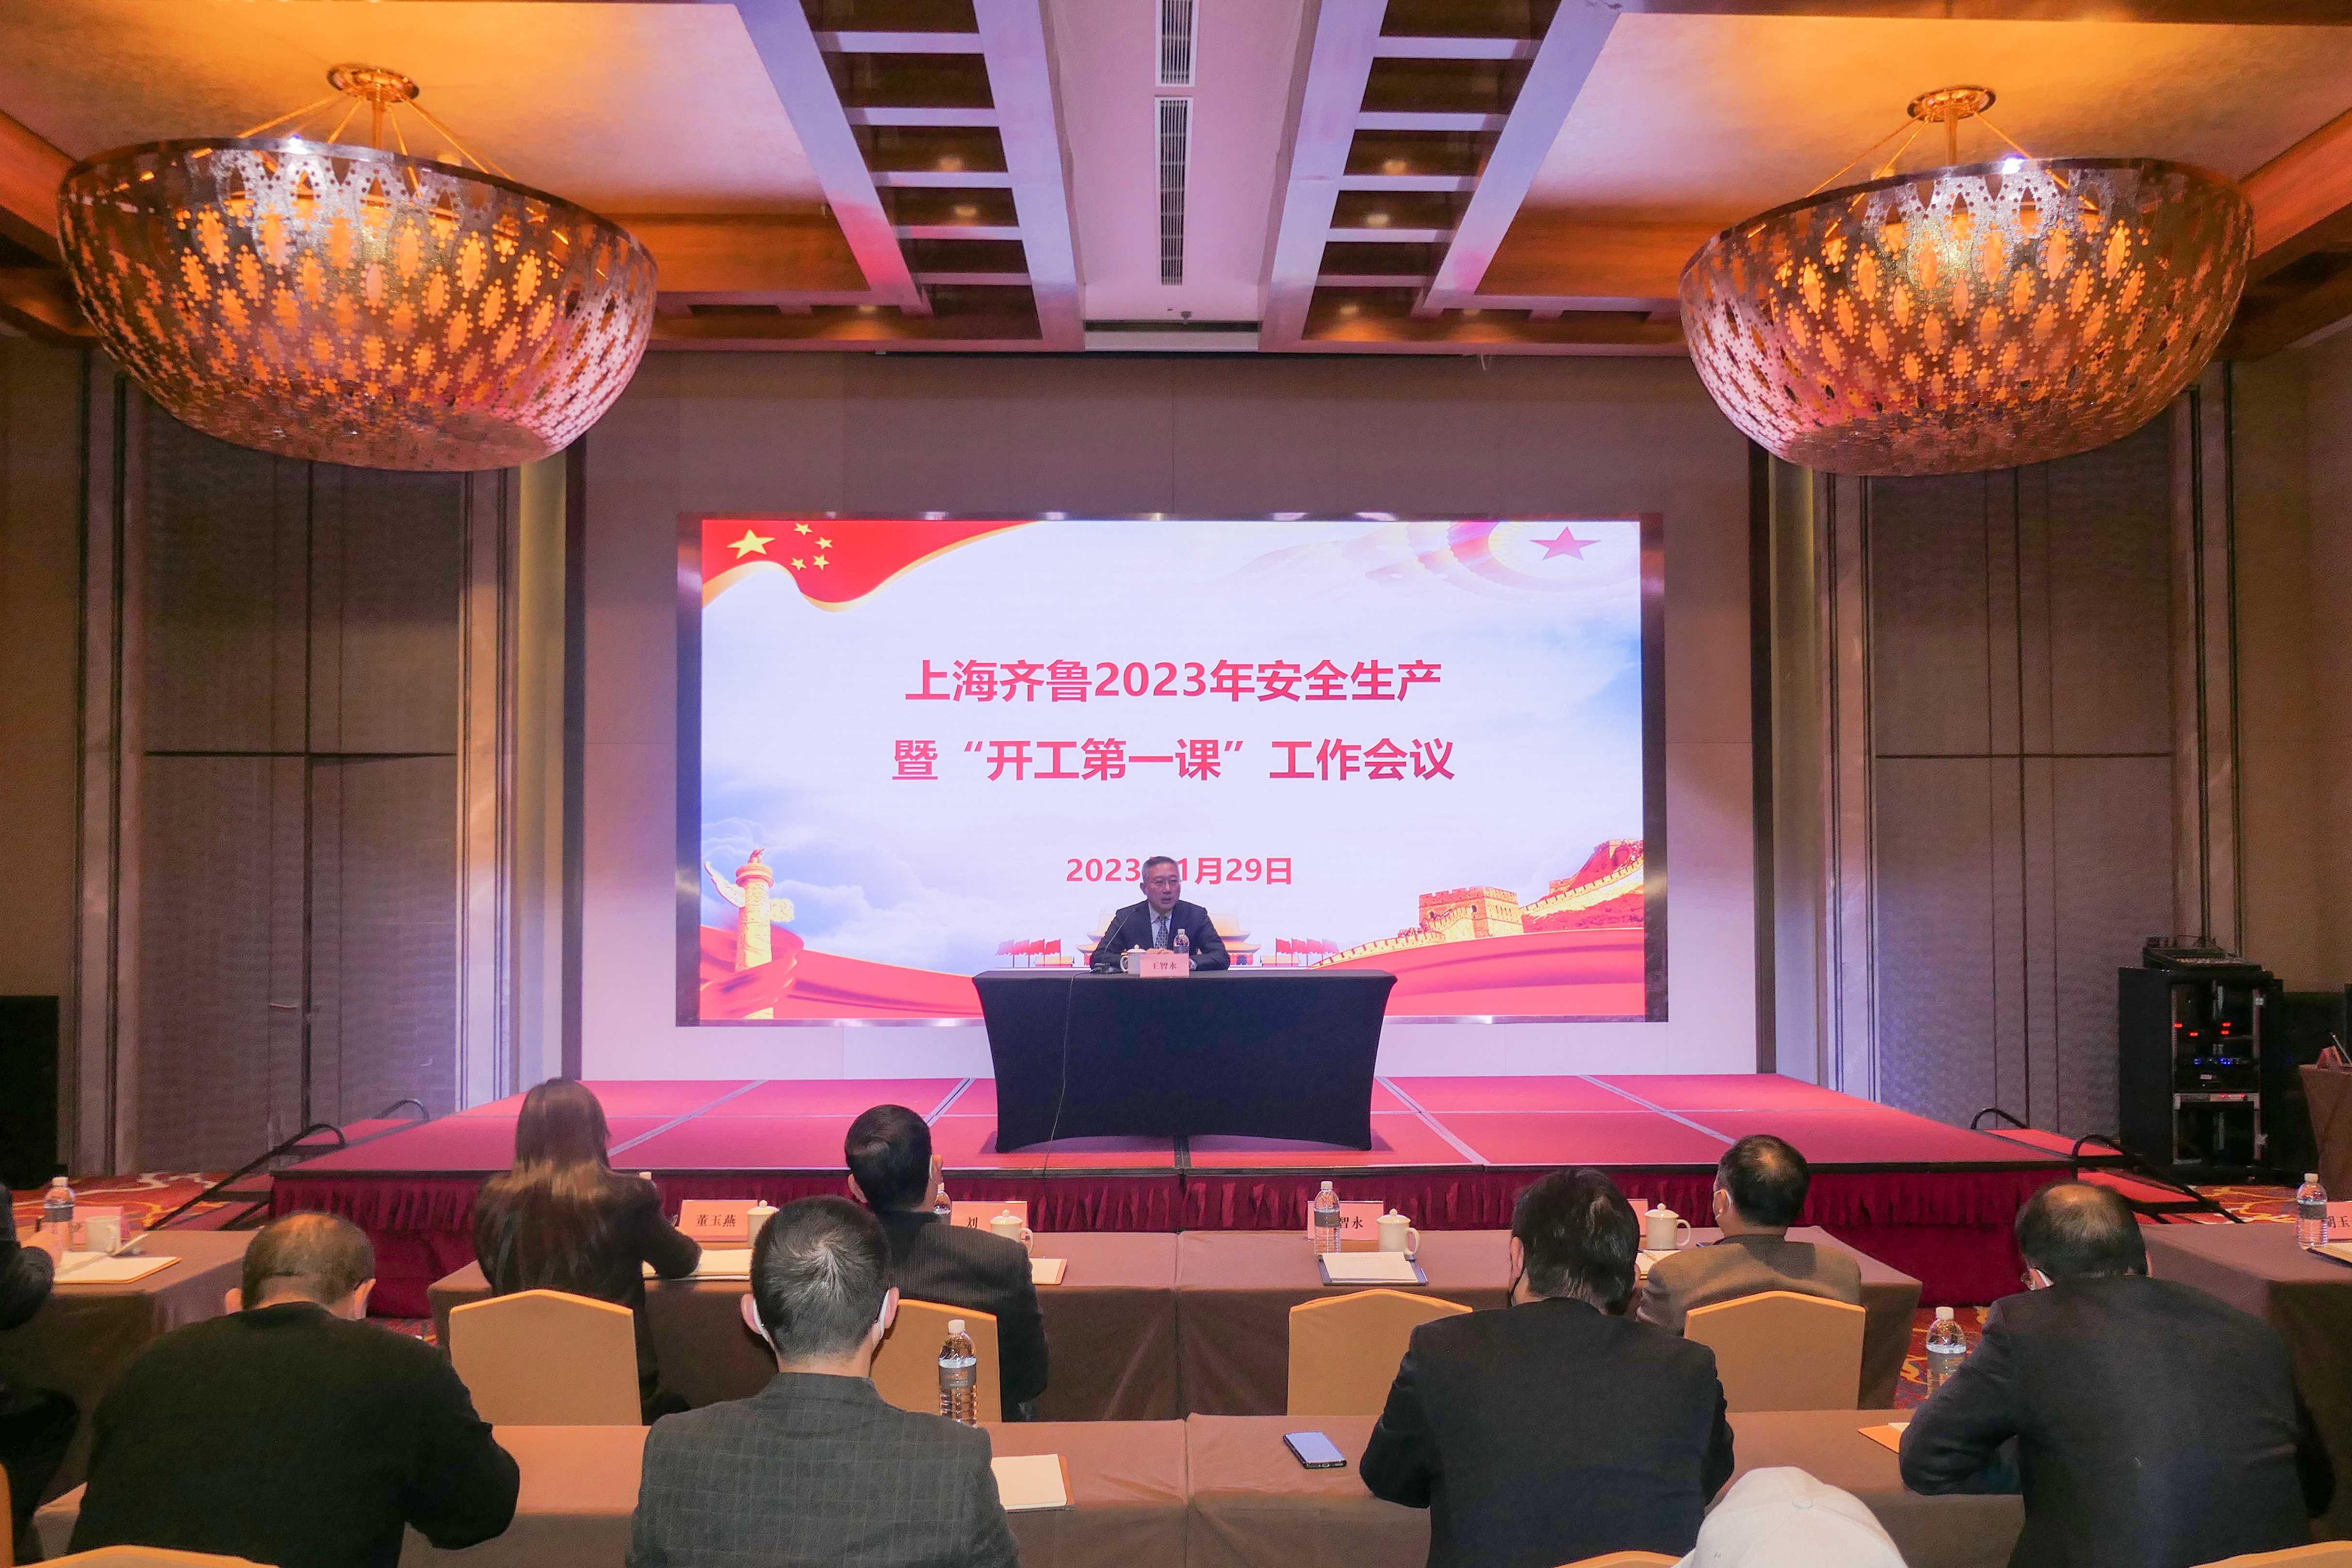 上海齐鲁召开2023年度安全生产工作会议暨“开工第一课”